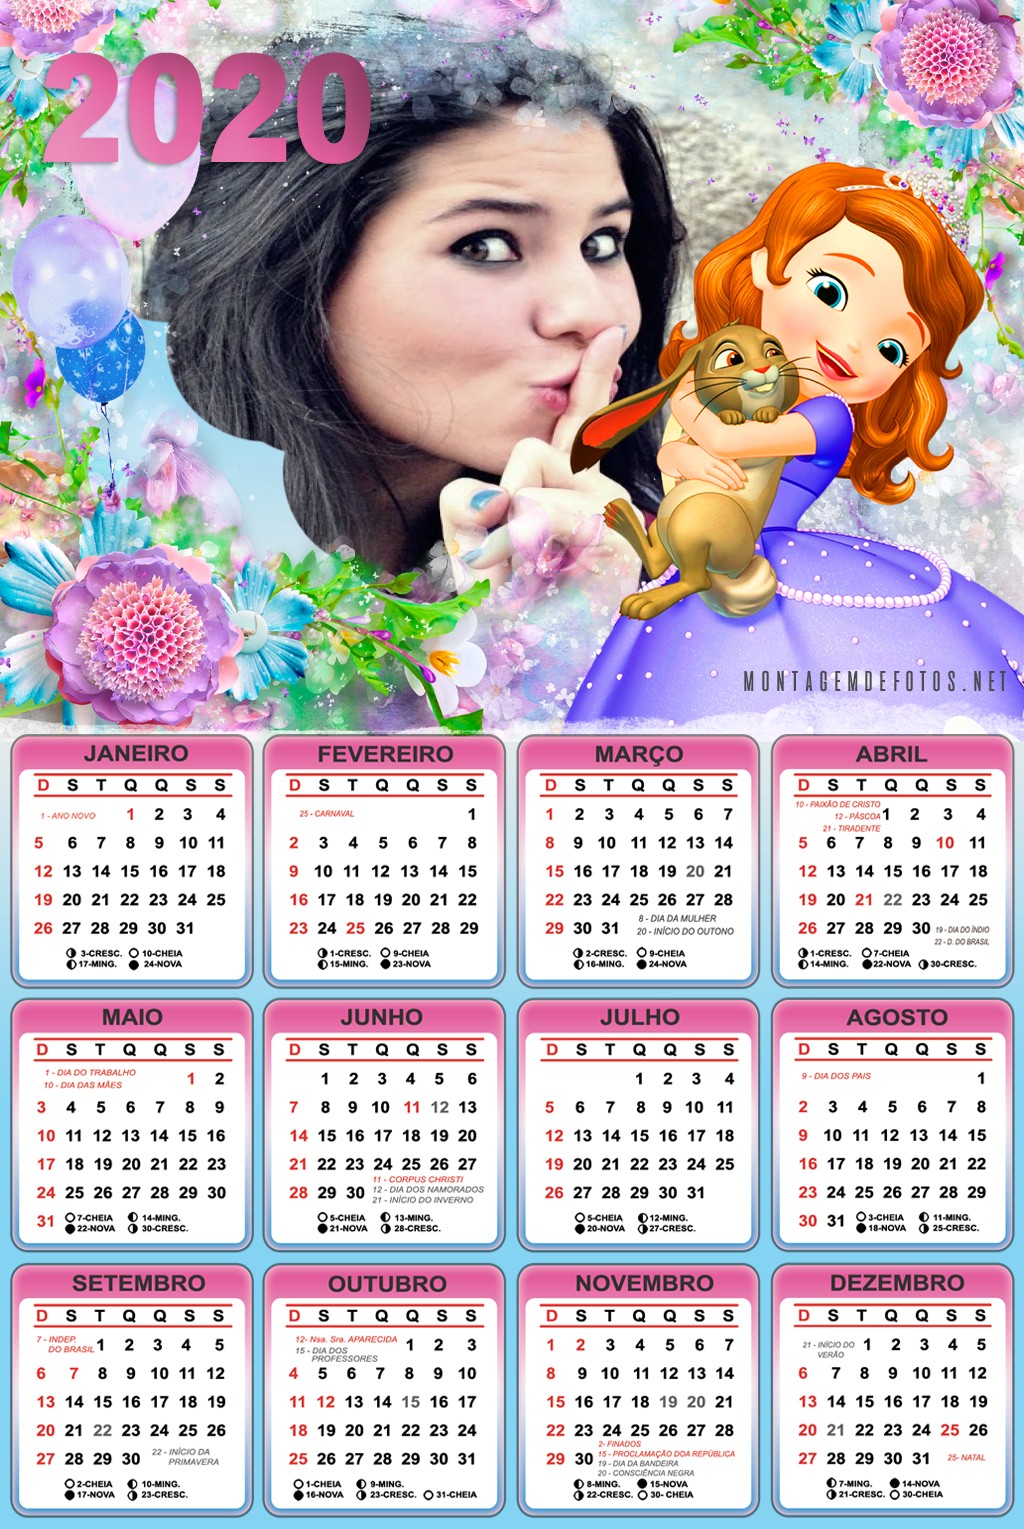 calendario-com-foto-2020-princesa-sofia-disney